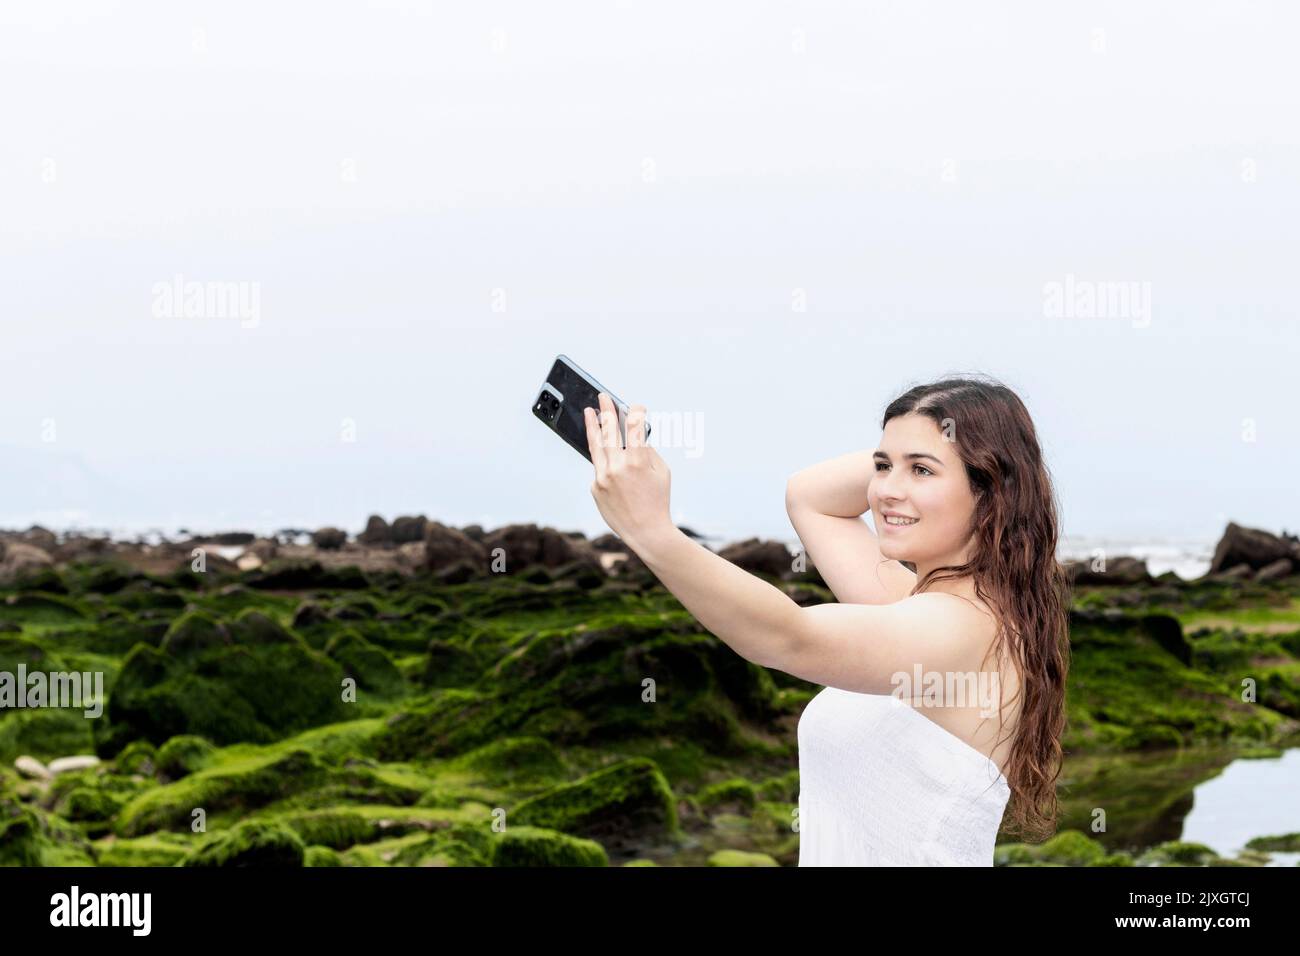 giovane donna brunetta in abito bianco che prende un selfie sulla costa Foto Stock